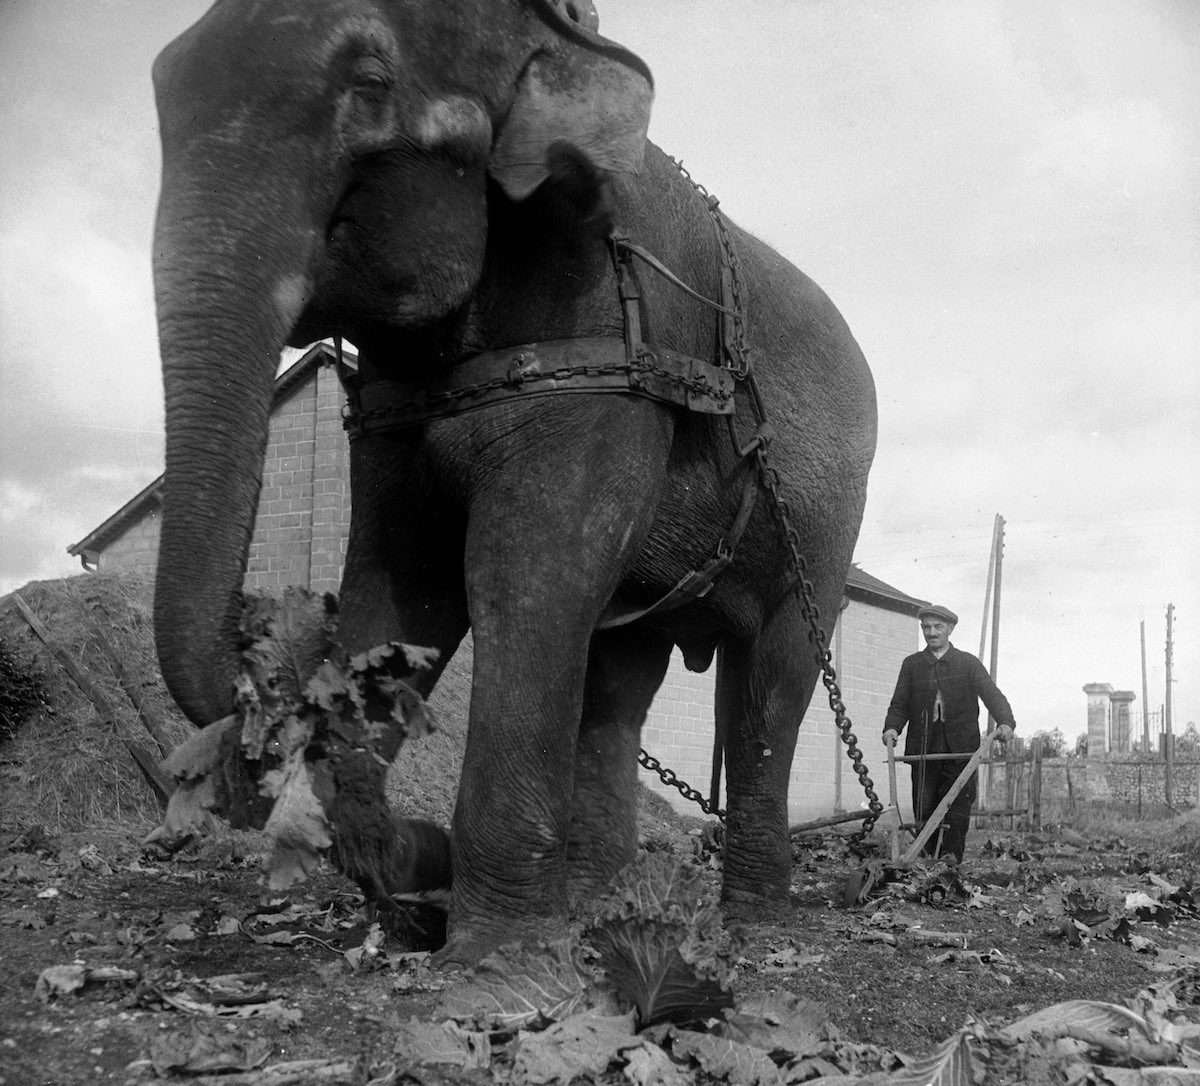 WW2 photos An elephant plows instead of a horse